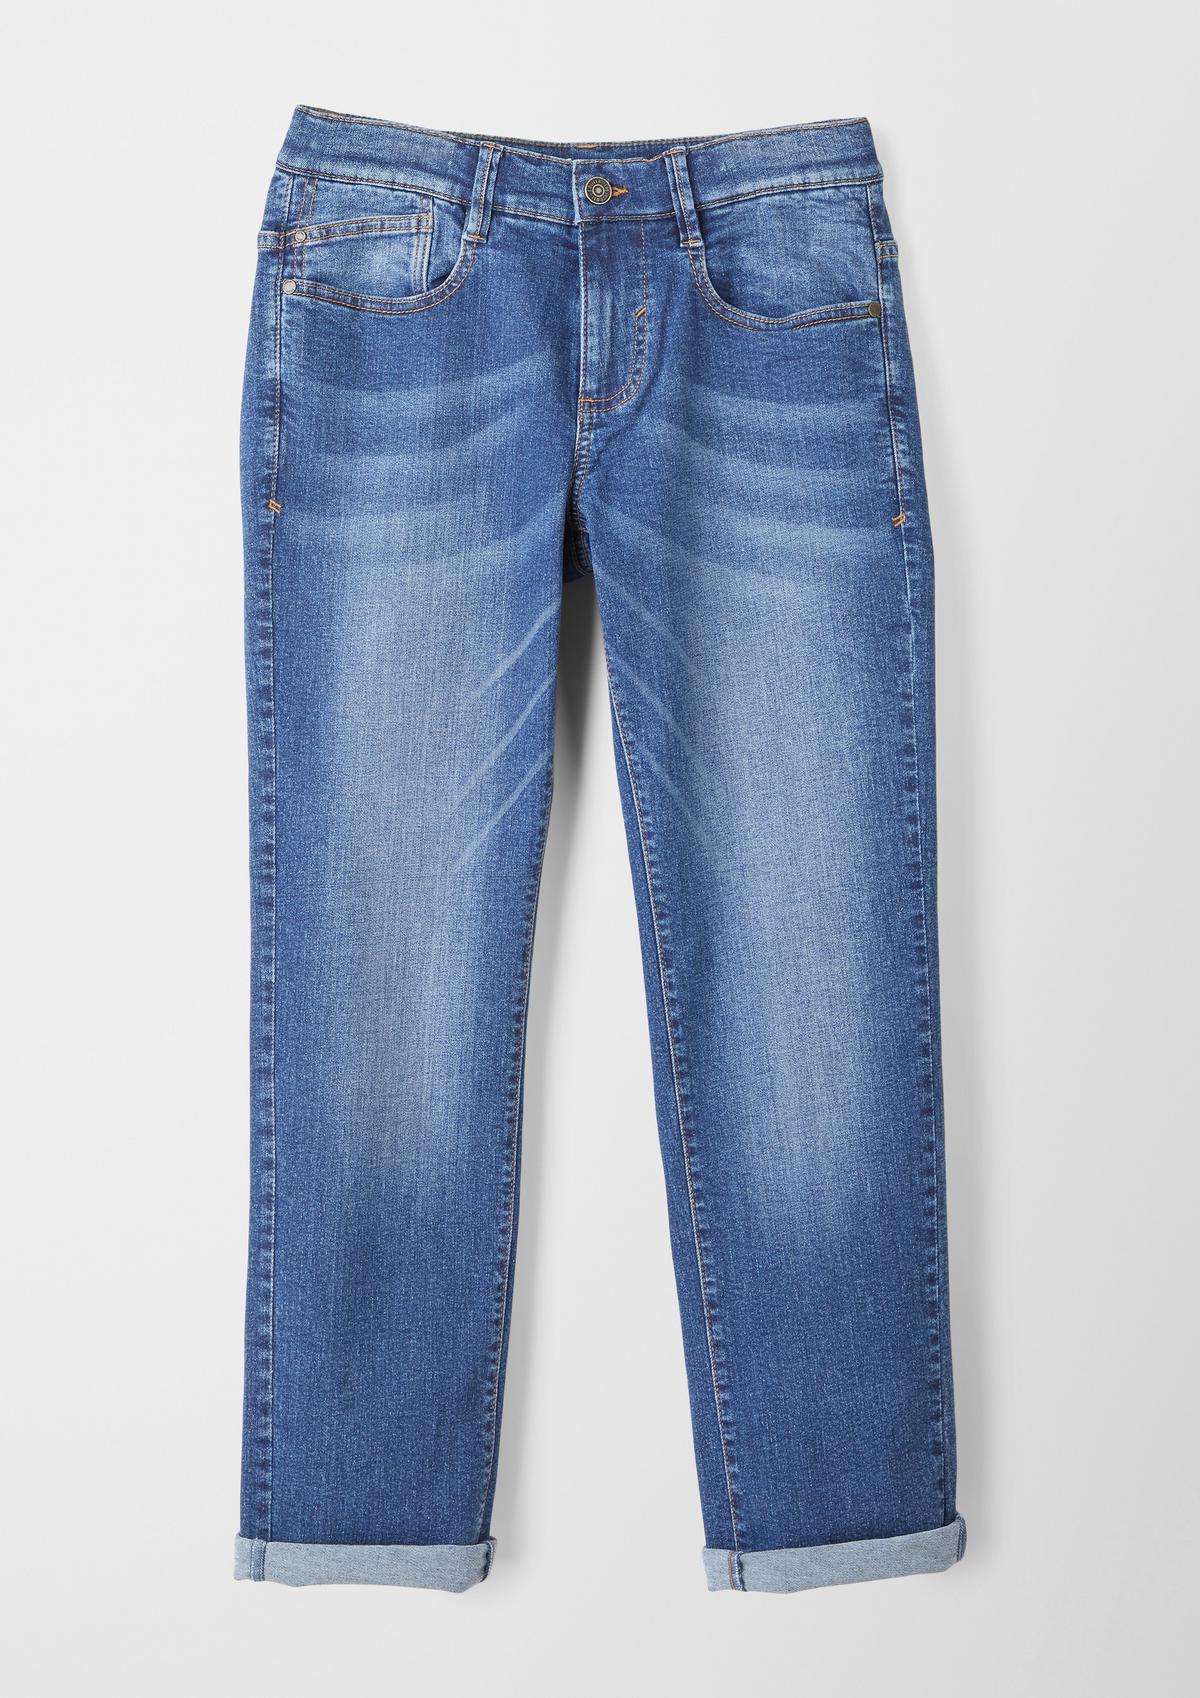 Jeans Pete / Regular Fit / Mid Rise / Straight Leg - ozeanblau